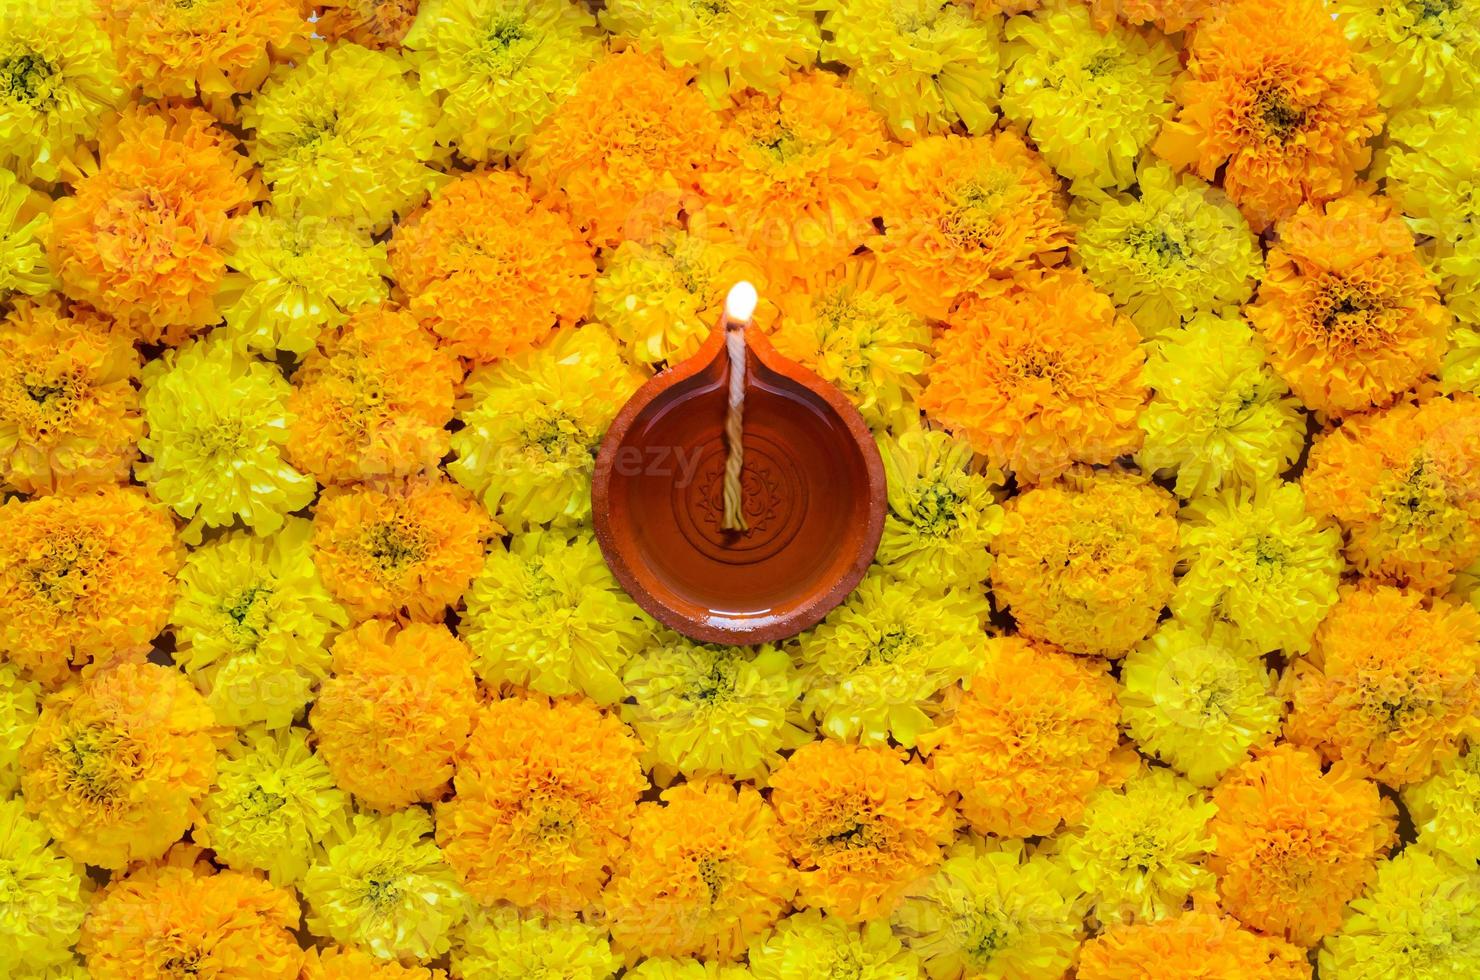 dekorativ ringblomma blomma rangoli för diwali festival med lera diya lampa belyst med suddig fokus flamma. foto